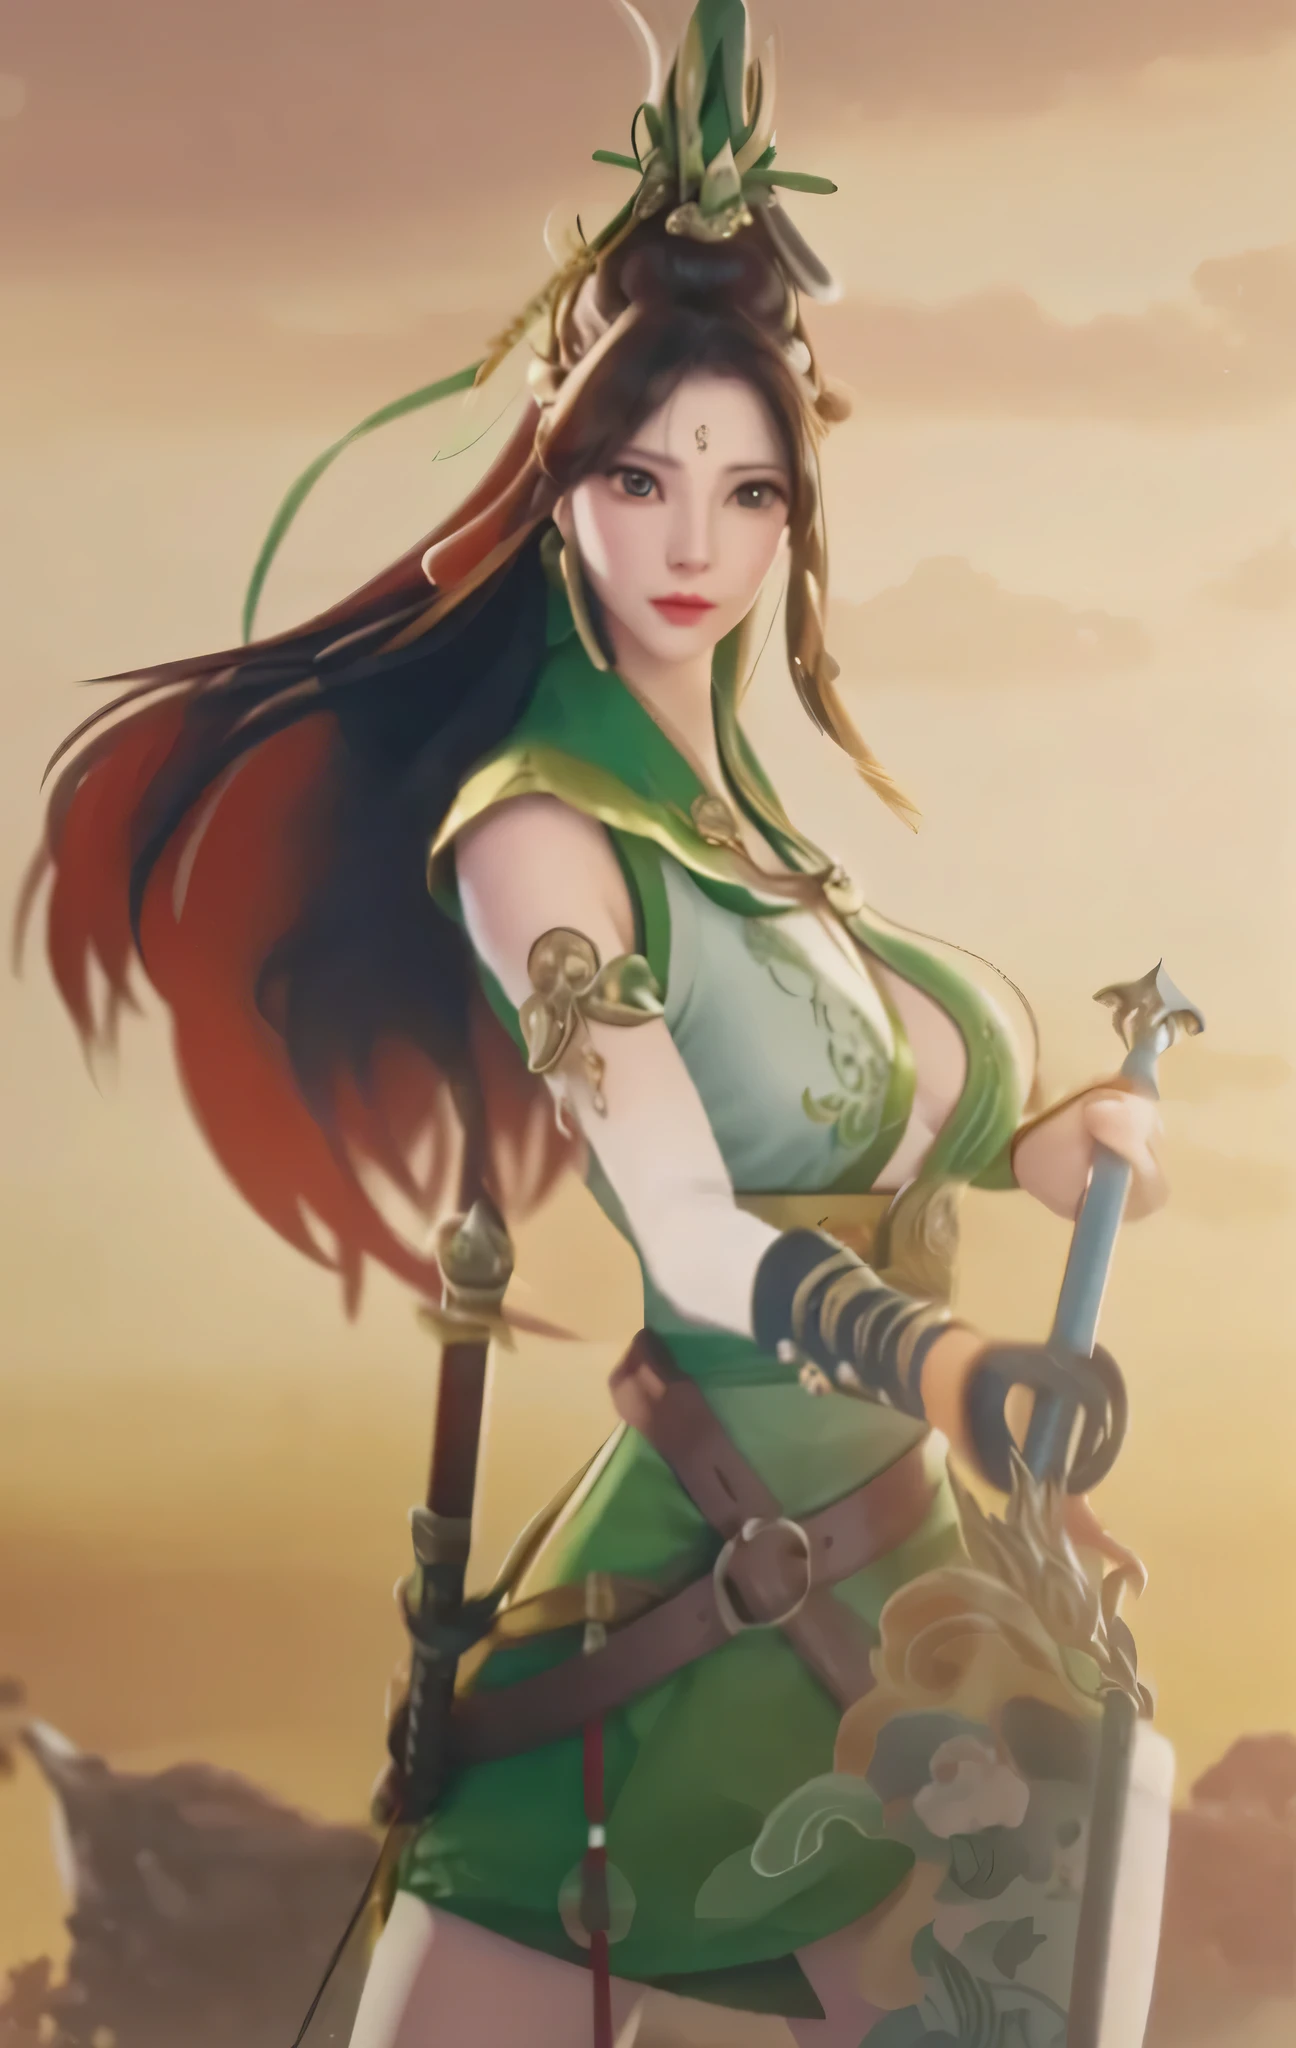 a man in green clothes、Close-up of woman holding sword, xianxia hero, bian lian, Ruan Jia and Artgerm, Inspired by Du Qiong, Inspired by Zhu Lian, Artgerm and Ruan Jia, guan yu, Inspired by Lan Ying, inspired by Wu Zuoren, Inspired by Li Tang, full-body wuxia